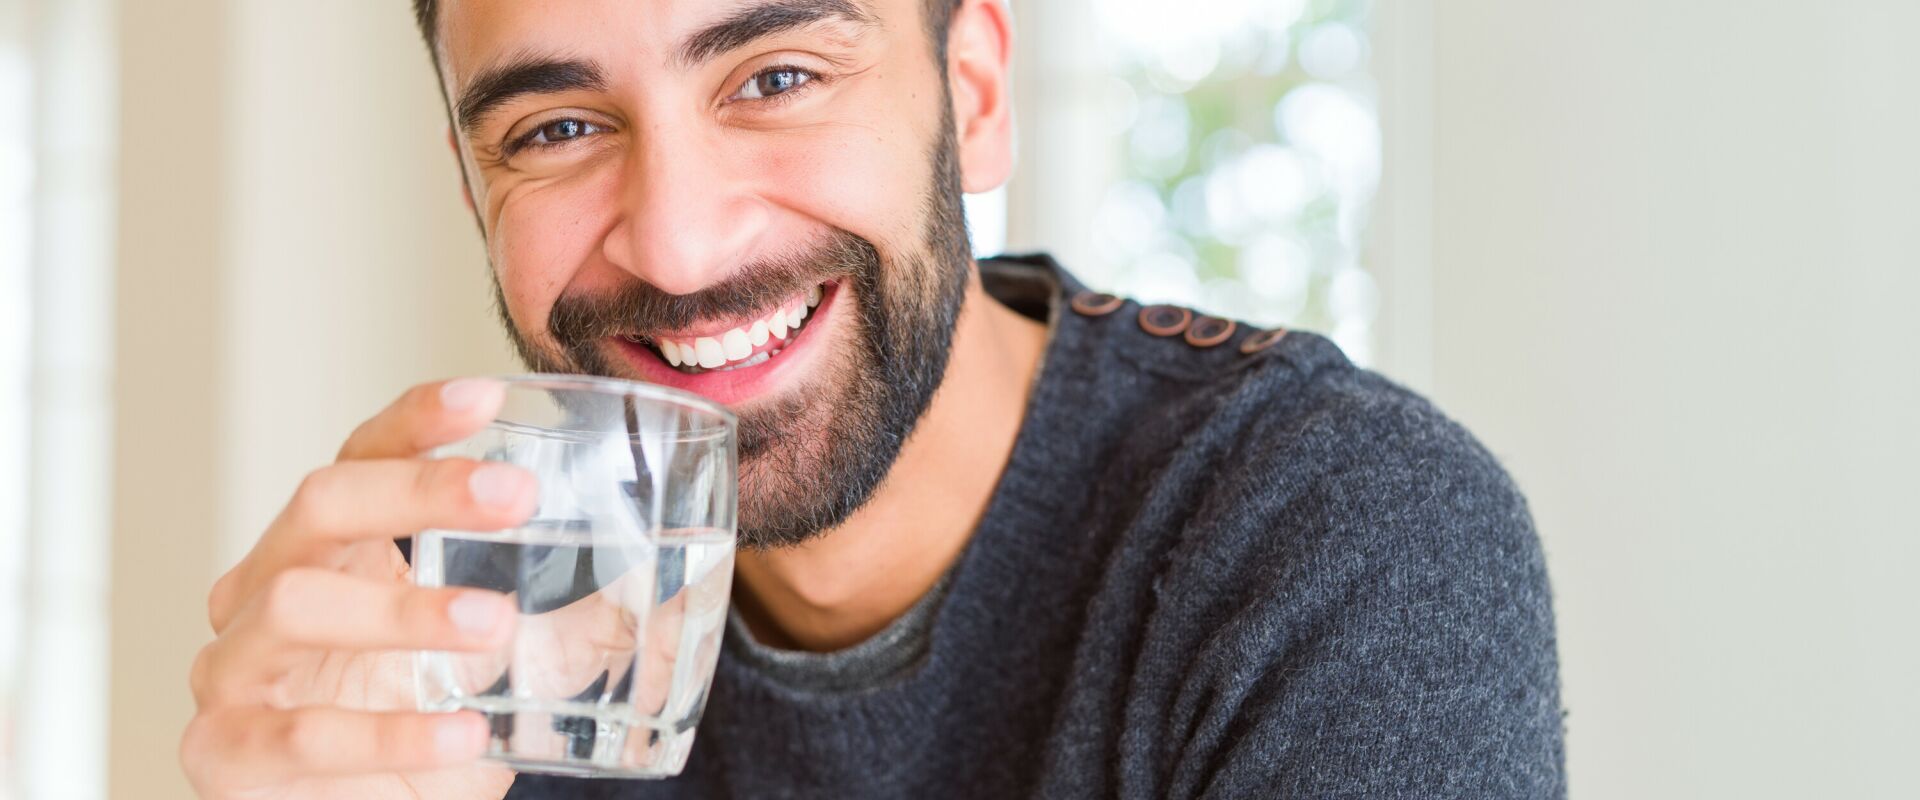 Ein Mann mit leichtem Bart lächelt freundlich und hält ein Glas Trinkwasser in der Hand.